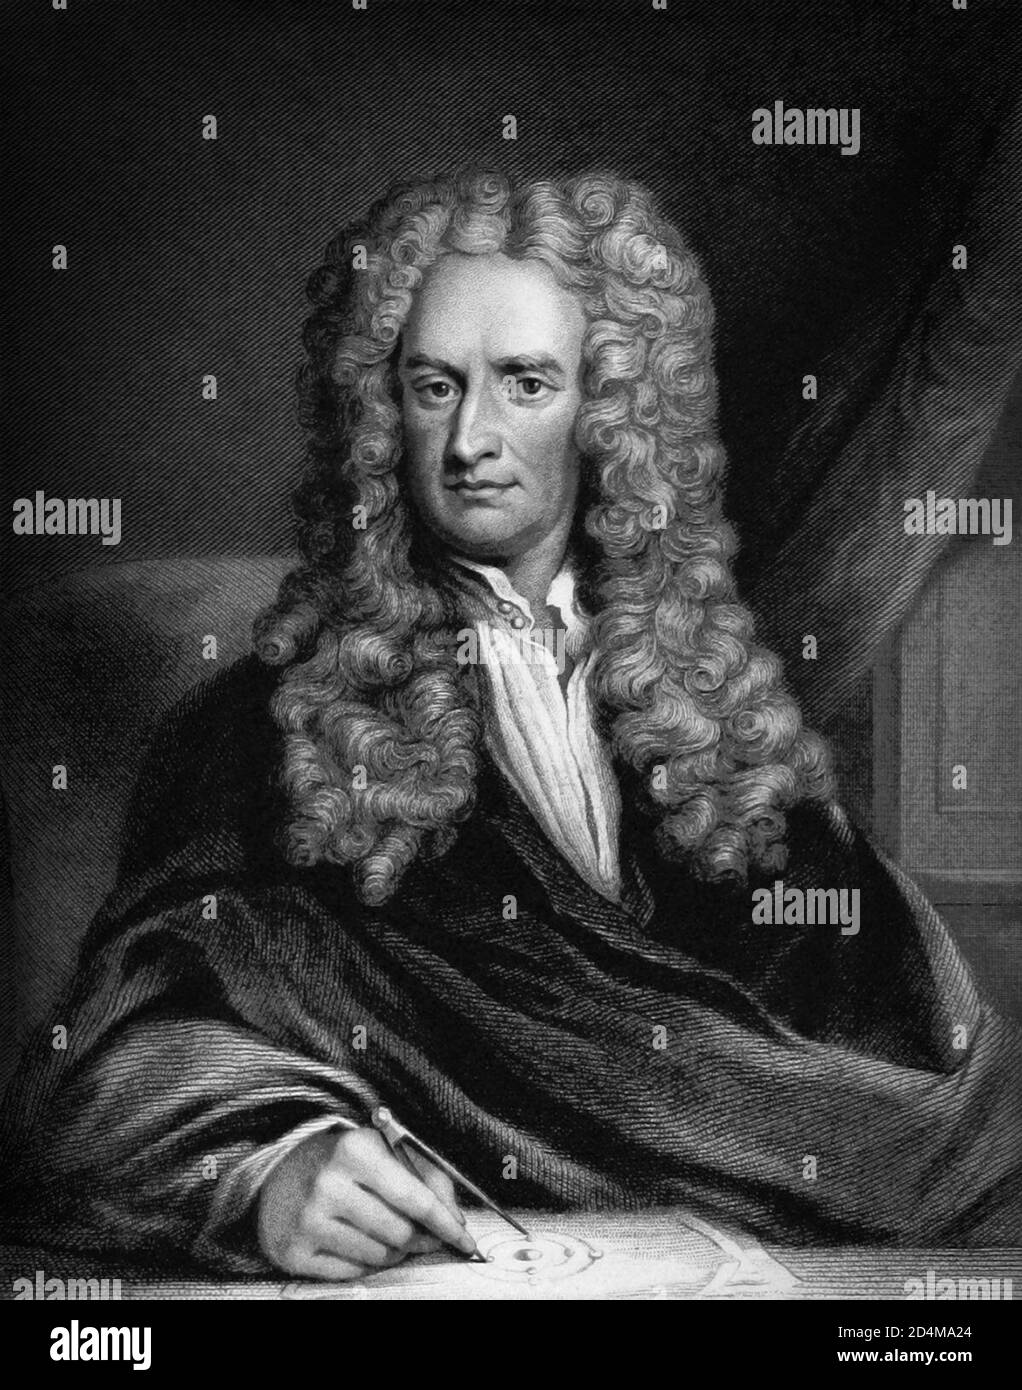 Sir Isaac Newton PRS (1642/43-1726/27) était un mathématicien, physicien, astronome, théologien et auteur anglais (décrit en son temps comme un « philosophe naturel ») largement reconnu comme l'un des scientifiques les plus influents de tous les temps et comme un personnage clé de la révolution scientifique. Banque D'Images